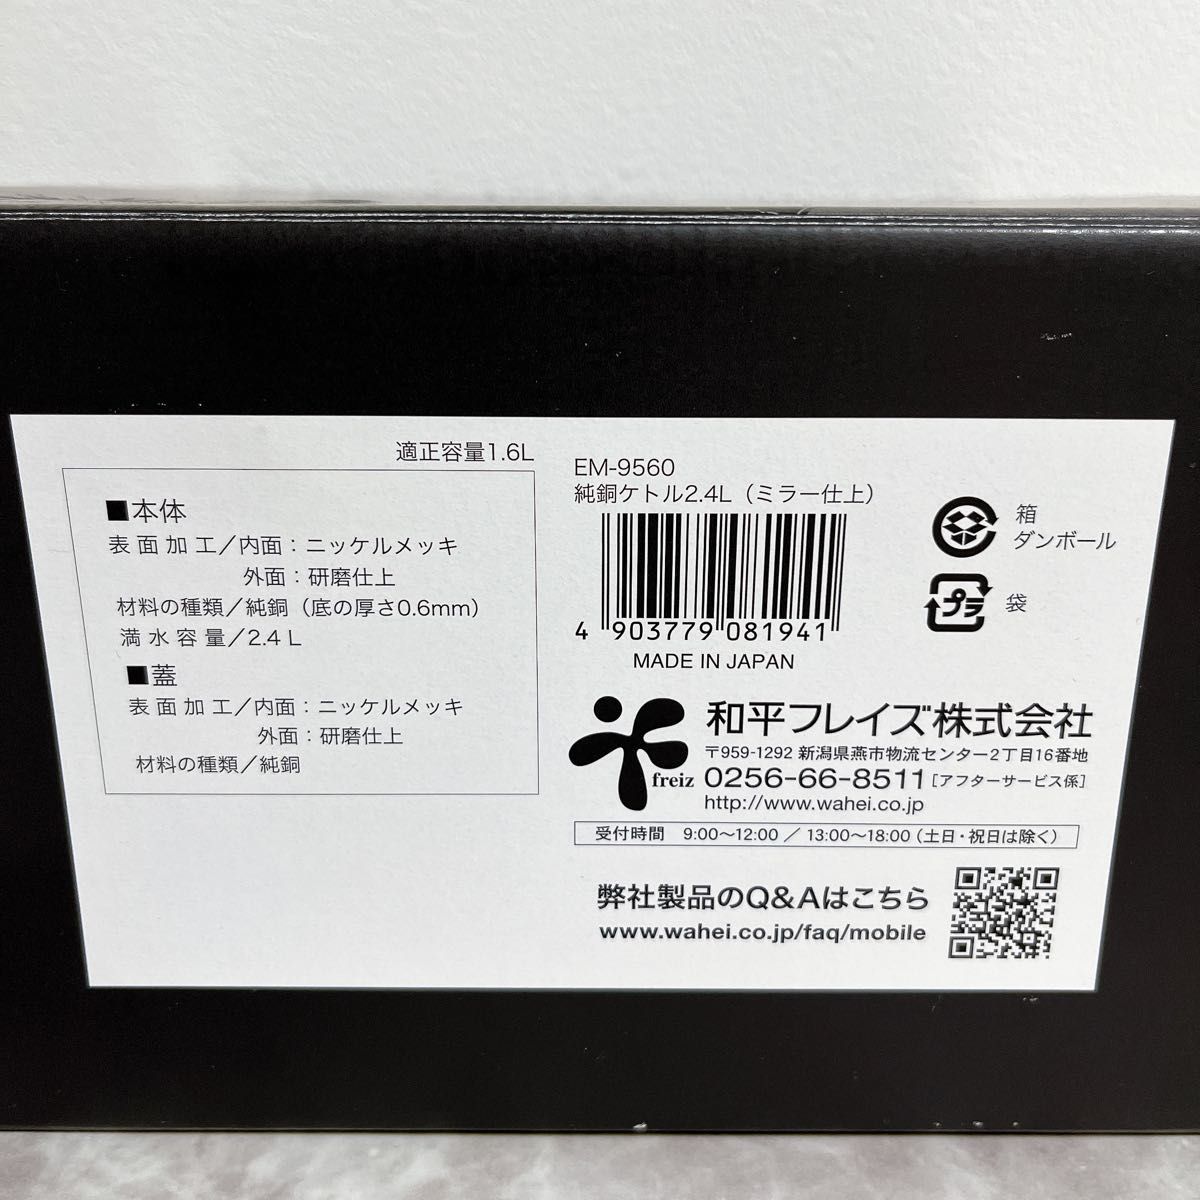 新品☆　やかん ケトル 2.4L ガス火専用 純銅 日本製 燕三 EM-8476